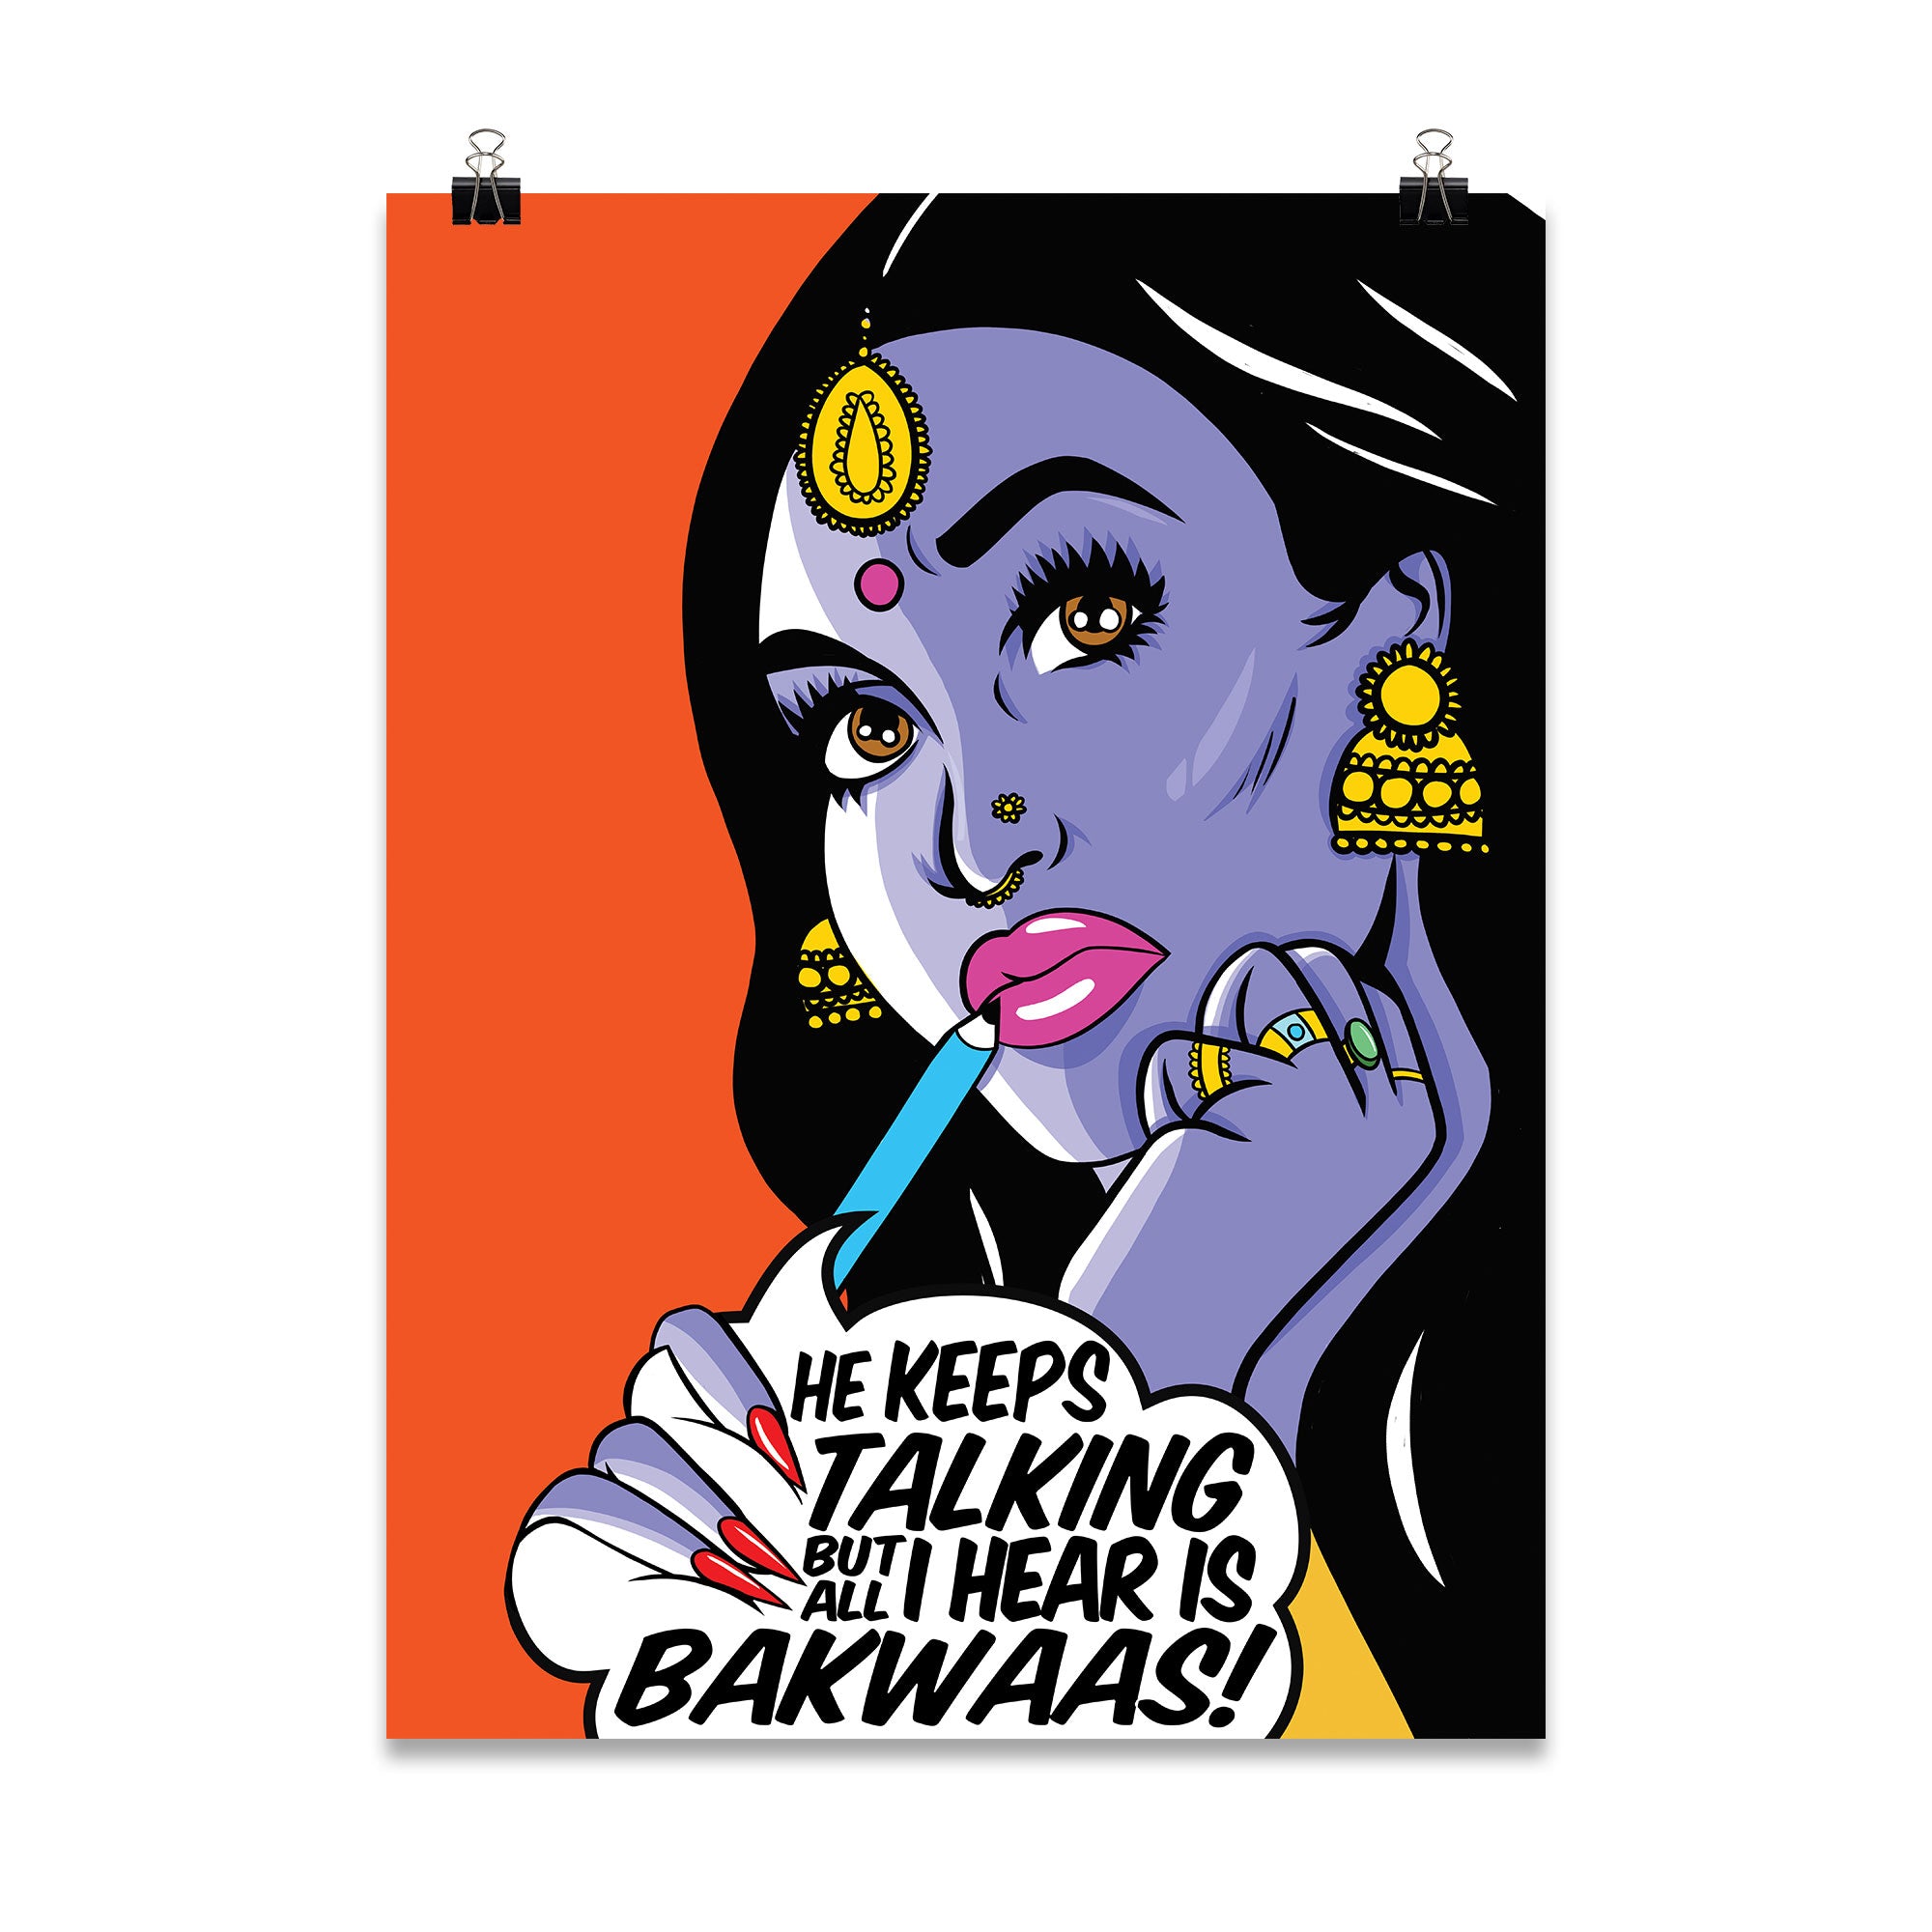 'Bakwaas!' Poster Print